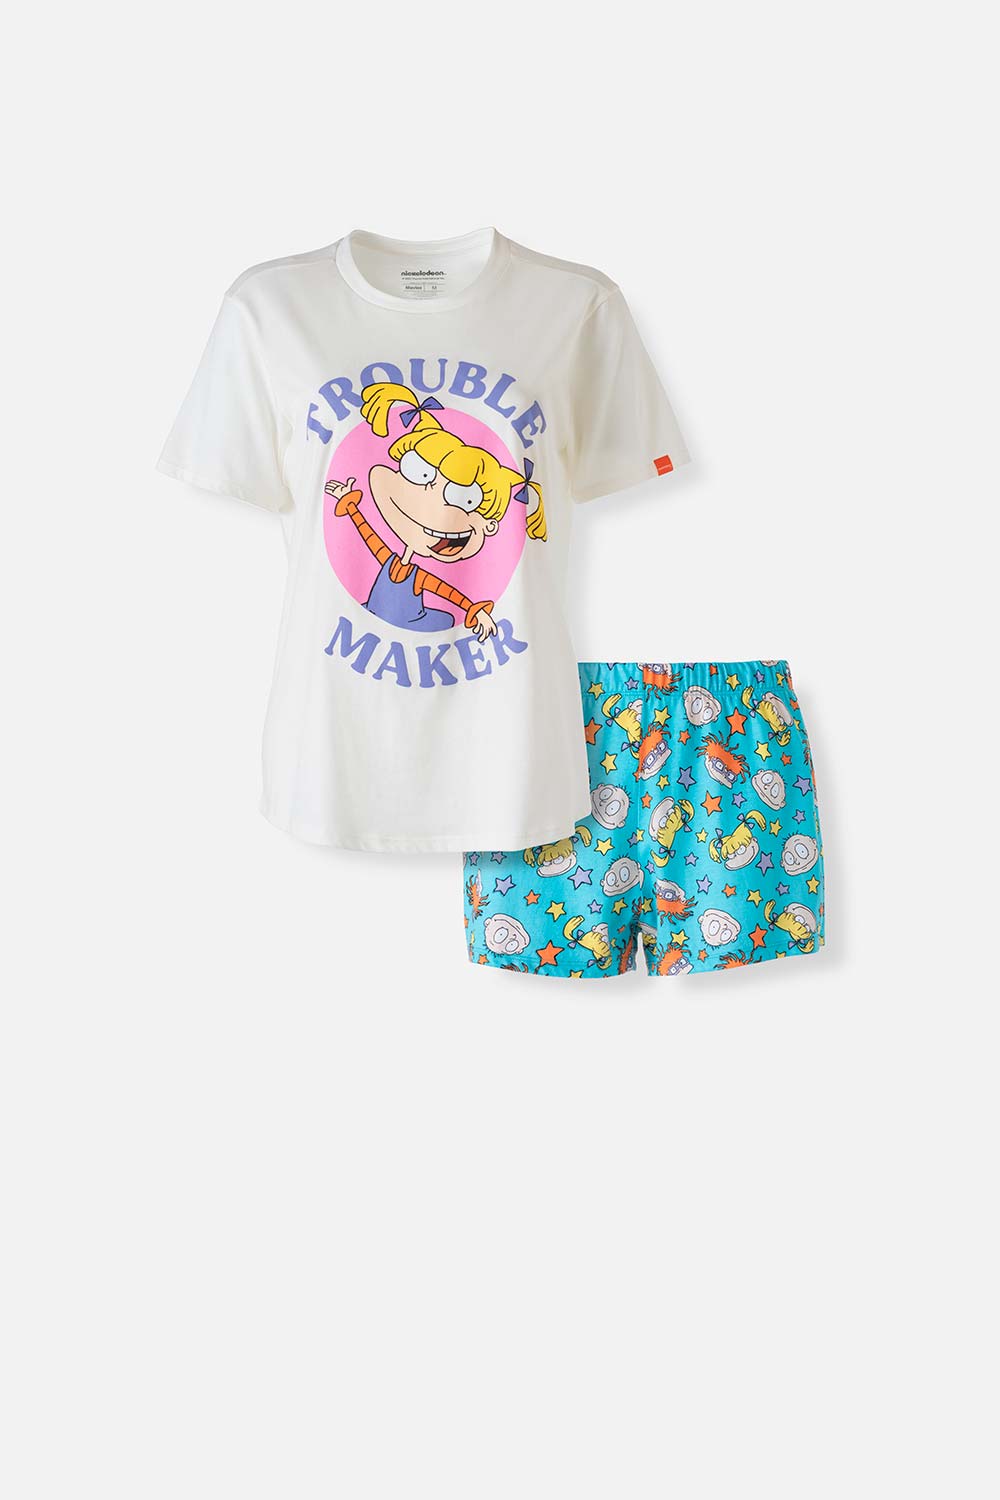 Pijama de los Rugrats marfil y azul de short para mujer XS-0